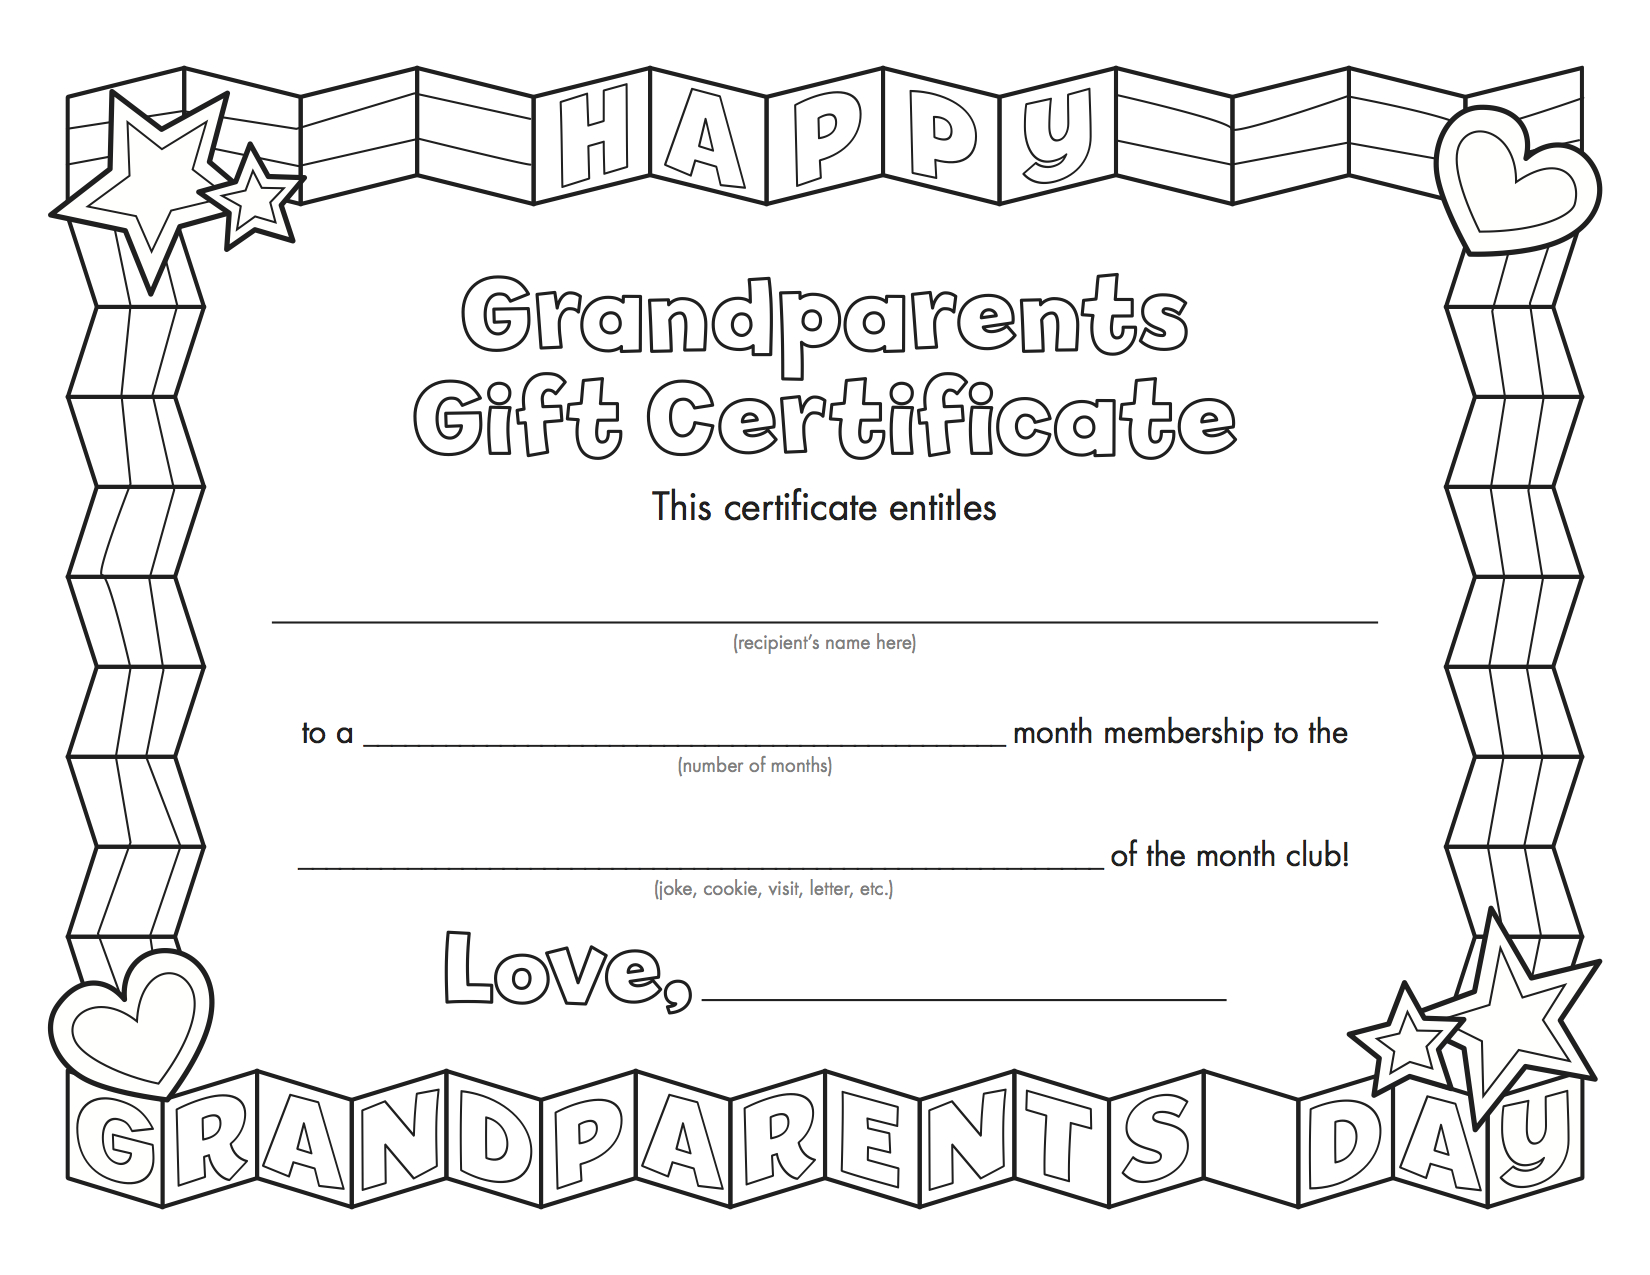 Grandparentsday_Copy | Grandparents Day | Grandparents Day - Grandparents Certificate Free Printable